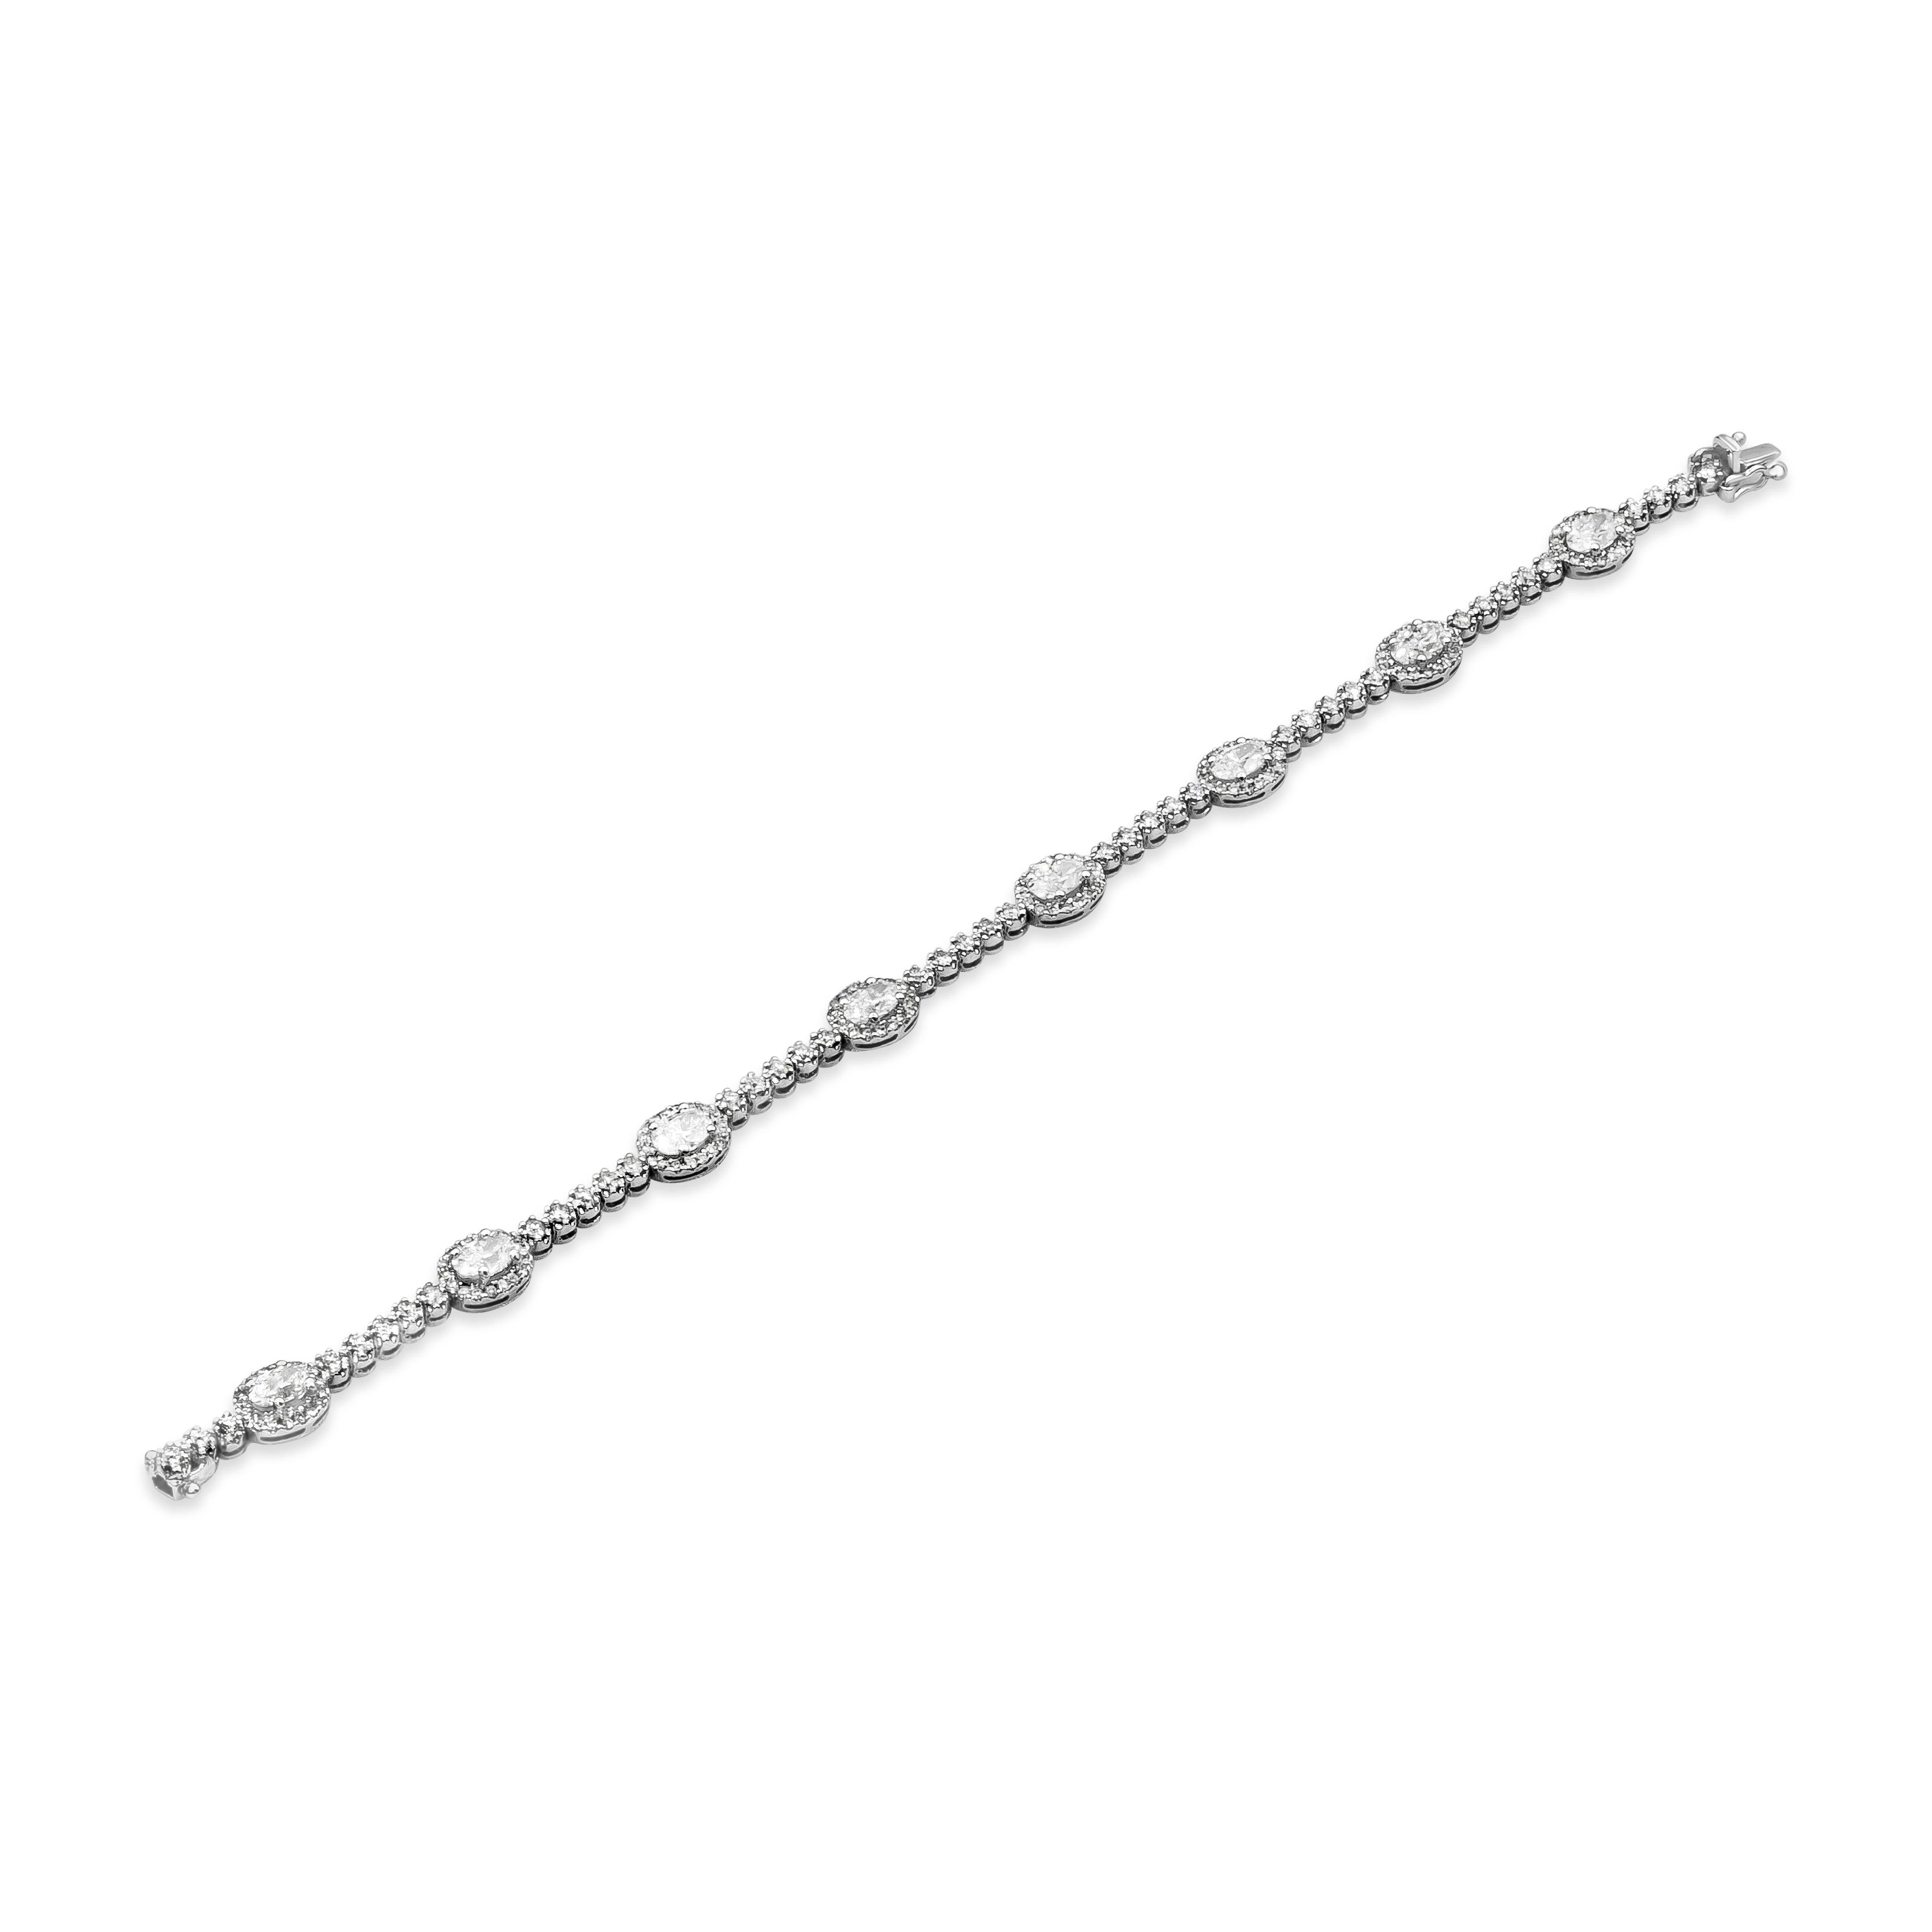 Un bracelet de tennis classique de style halo de diamants mettant en valeur des diamants de taille ovale de 2,46 carats au total, entourés d'une rangée de diamants ronds brillants, séparés par cinq diamants ronds. Le poids des diamants ronds est de